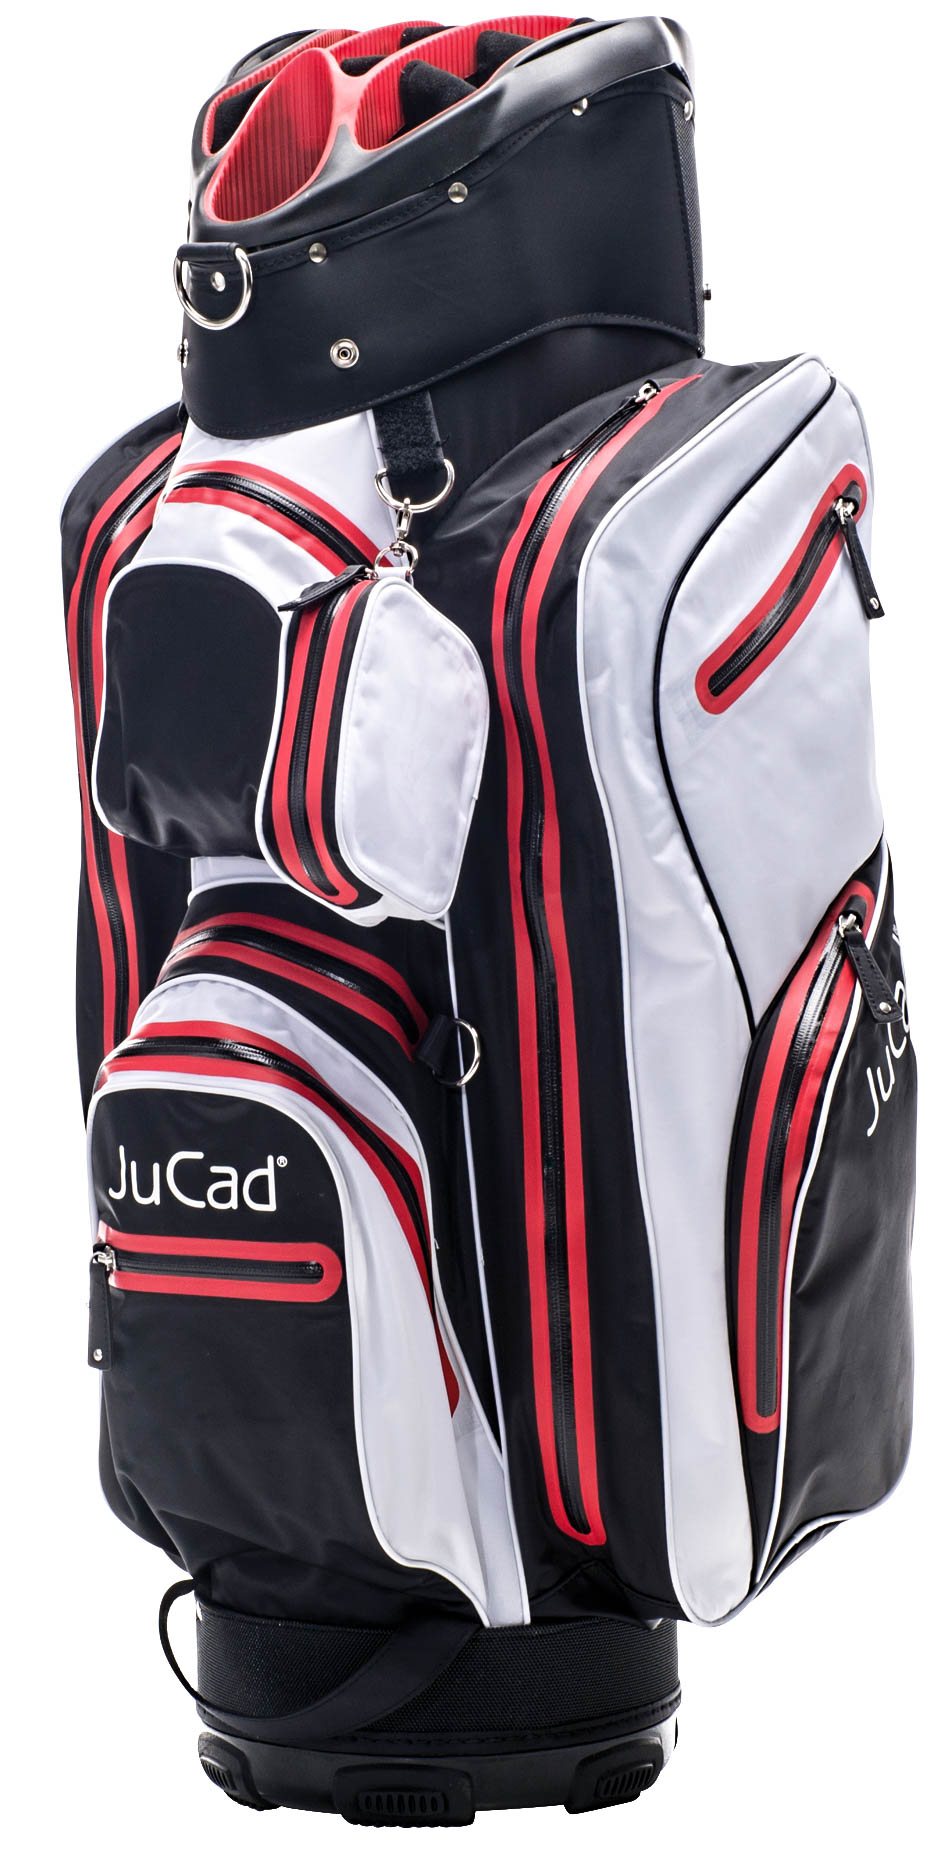 JuCad Aquastop Cartbag